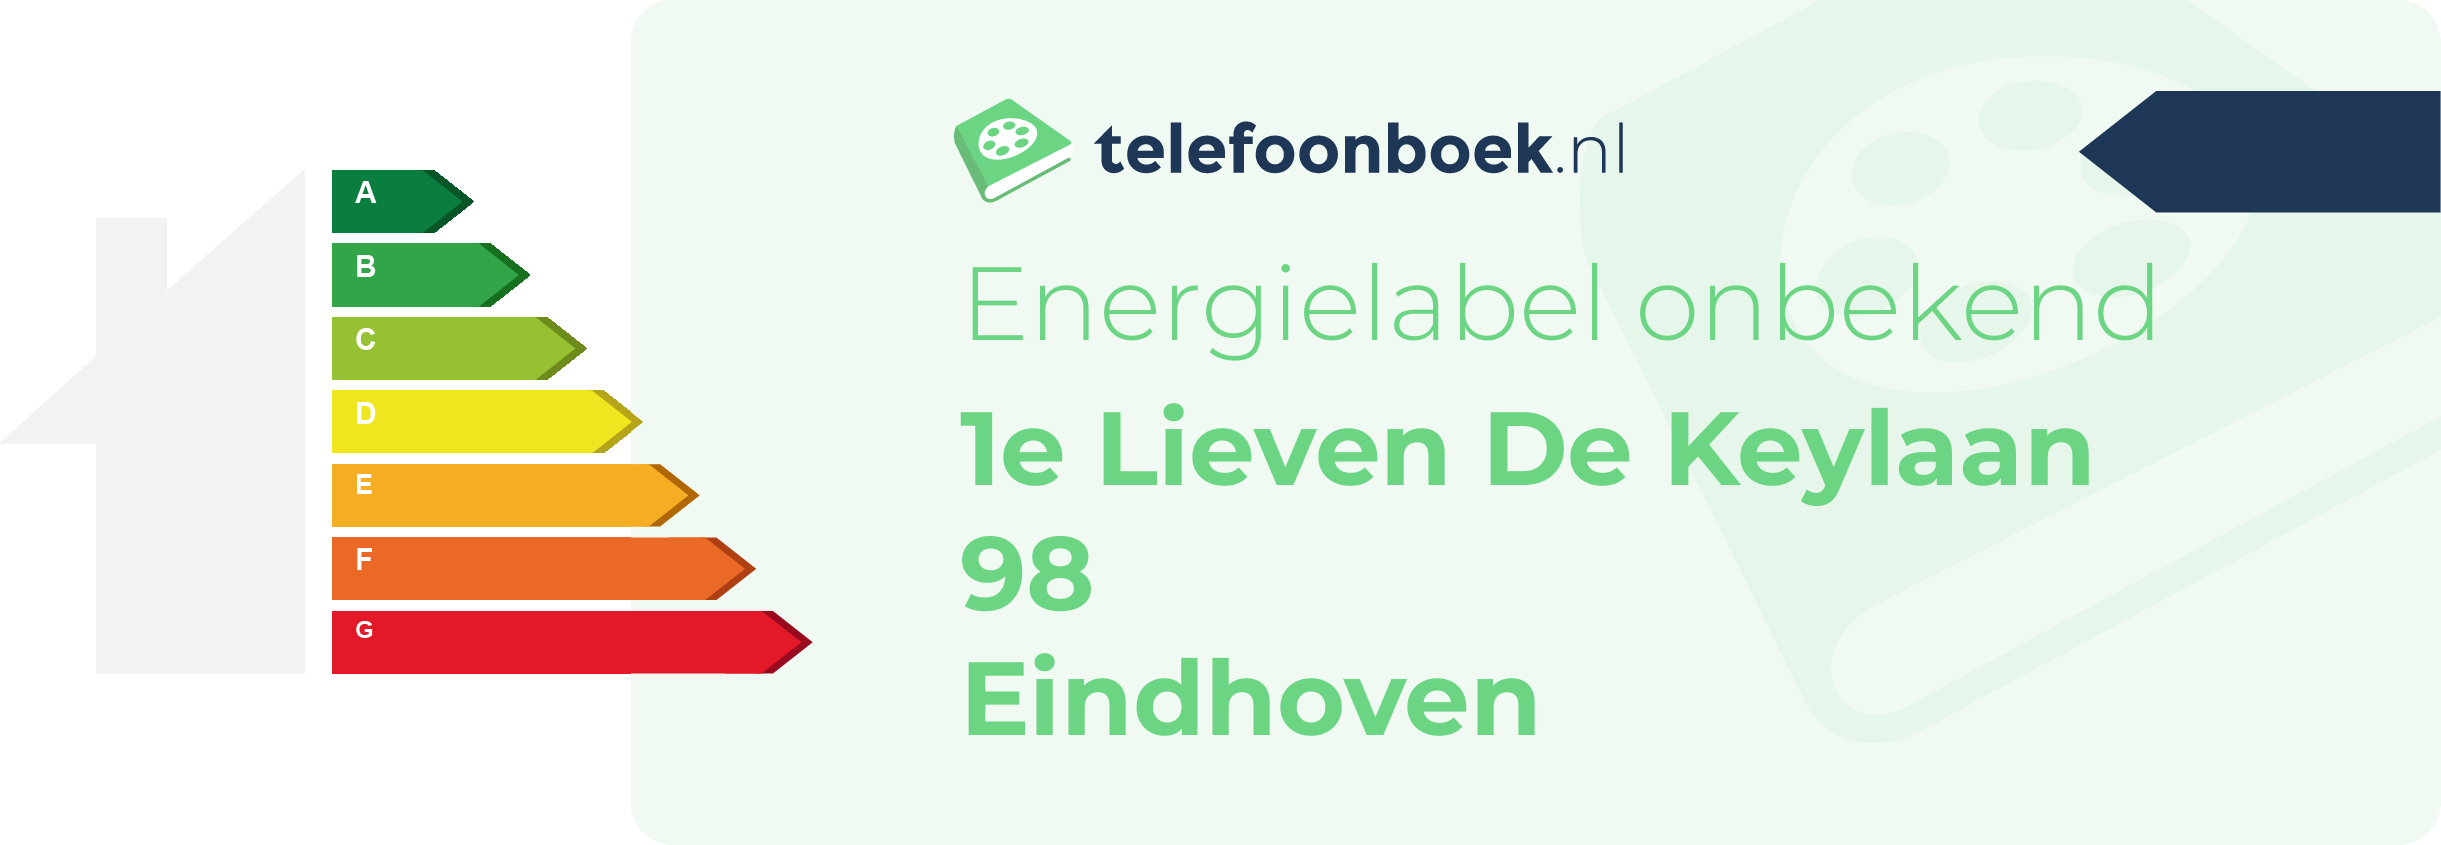 Energielabel 1e Lieven De Keylaan 98 Eindhoven